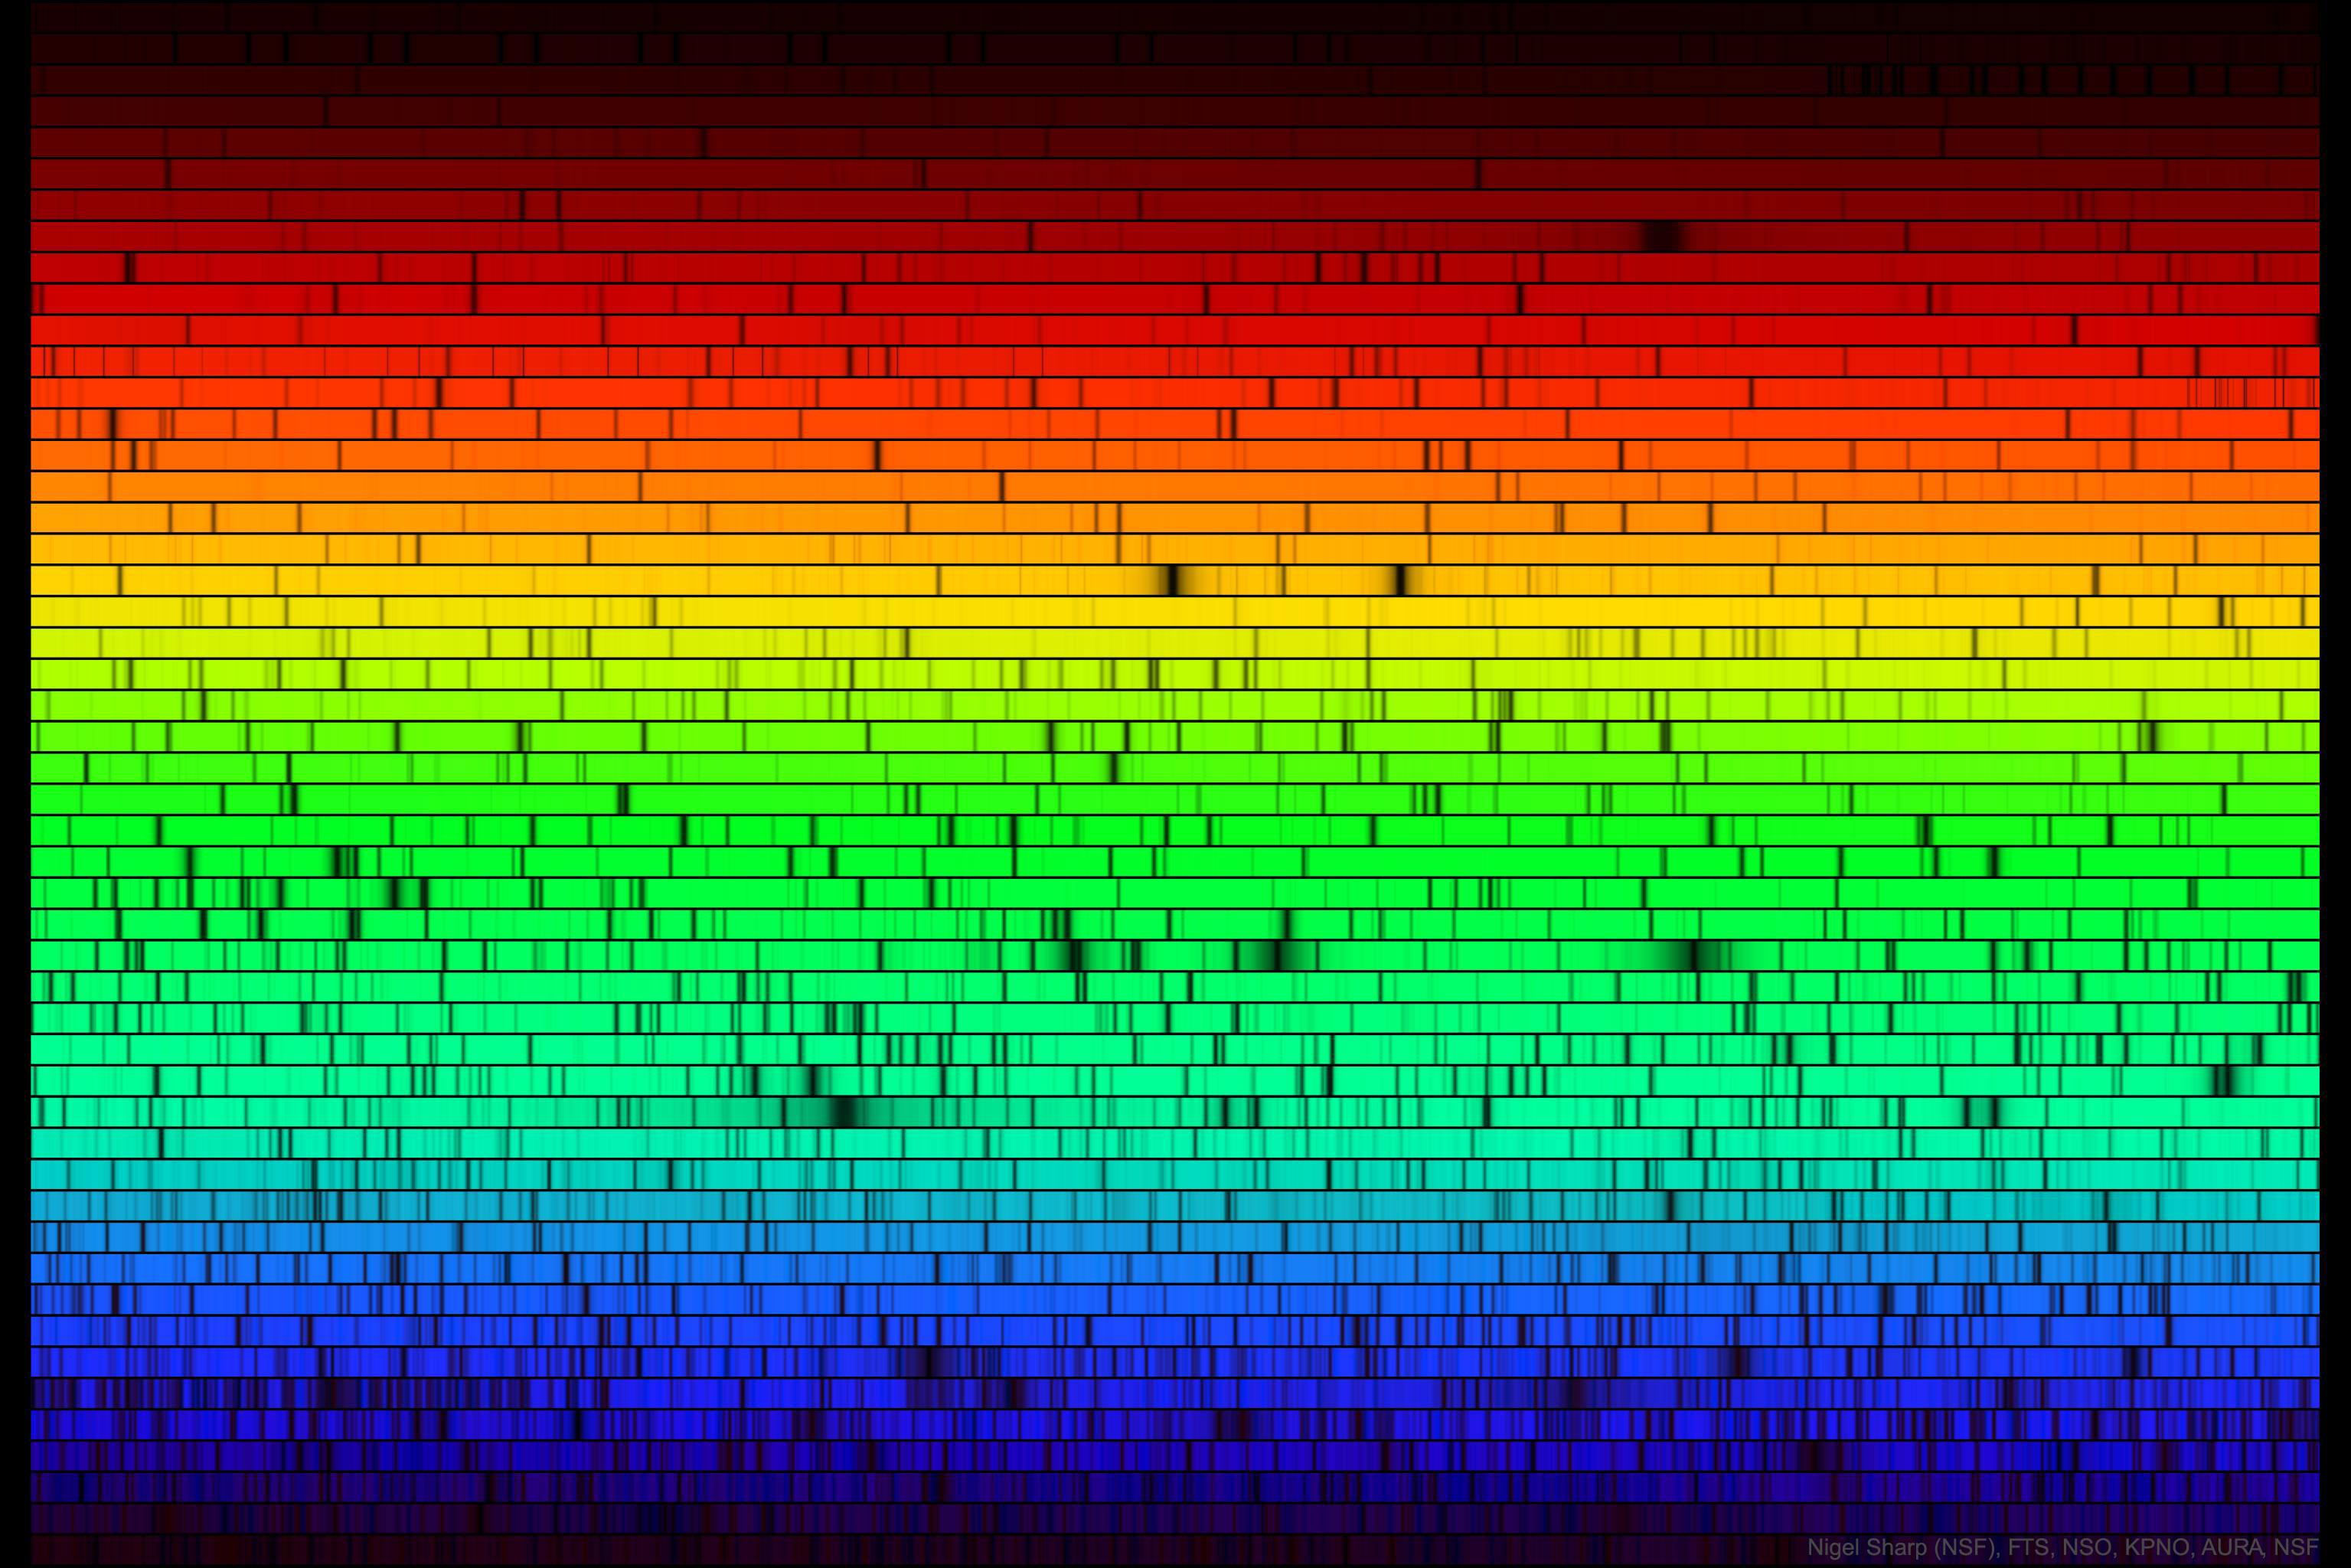 قوس قزحٍ من ألوان الشمس من الأحمر العميق في أعلى اليسار إلى الأزرق العميق أسفل اليمين. بعض الخطوط الأفقيّة تحتوي فجواتٍ تظهر داكنة حيثُ تكون بعض الألوان مفقودة.